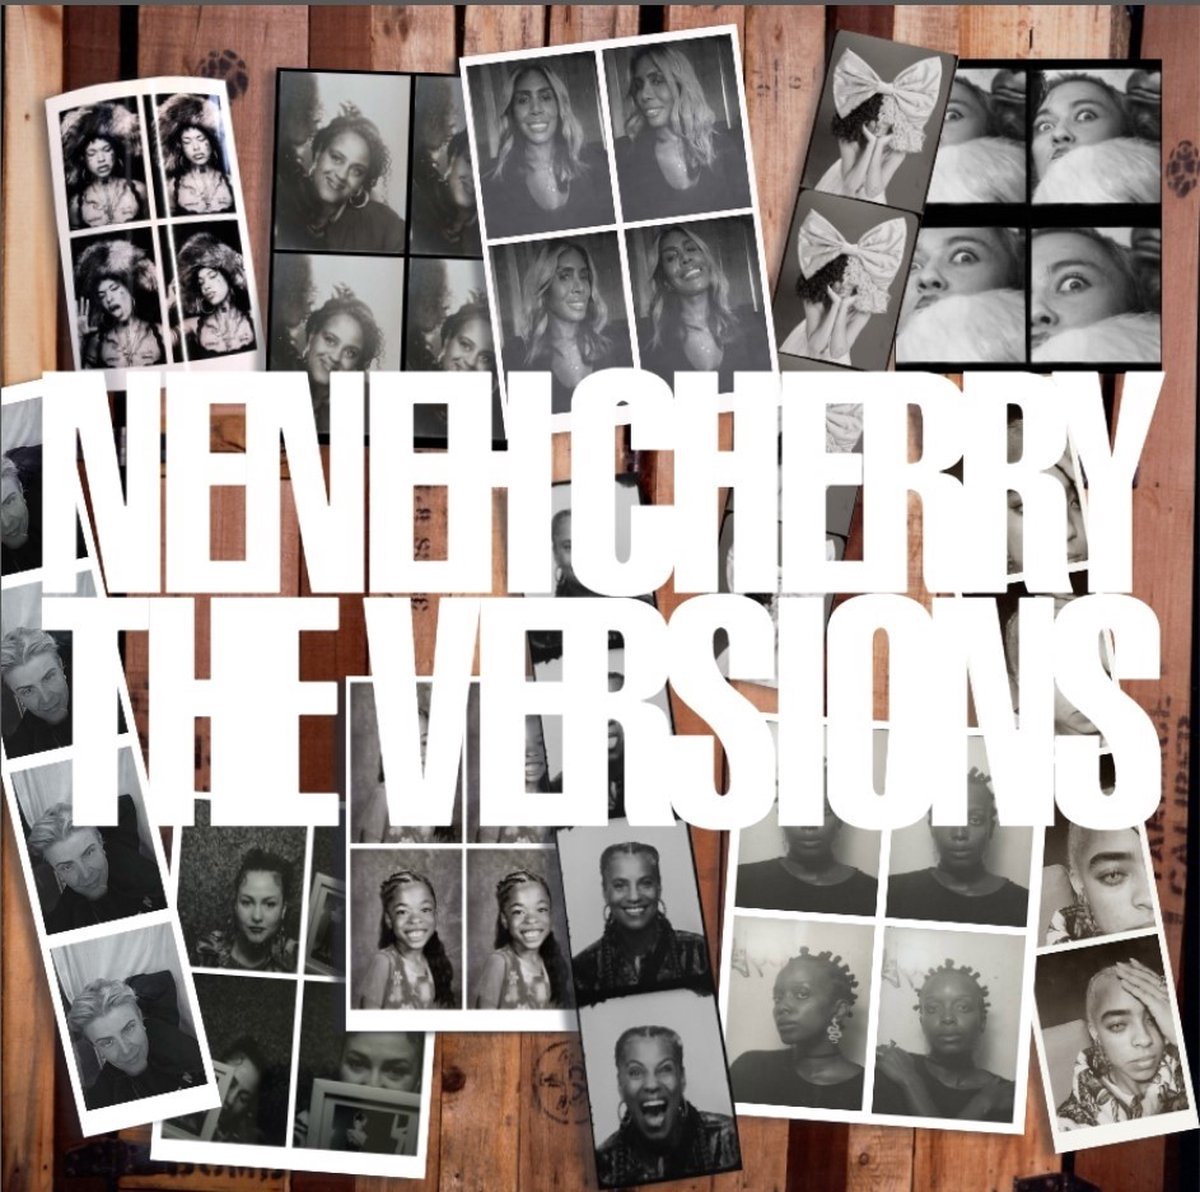 Neneh Cherry - The Versions (CD) - Neneh Cherry